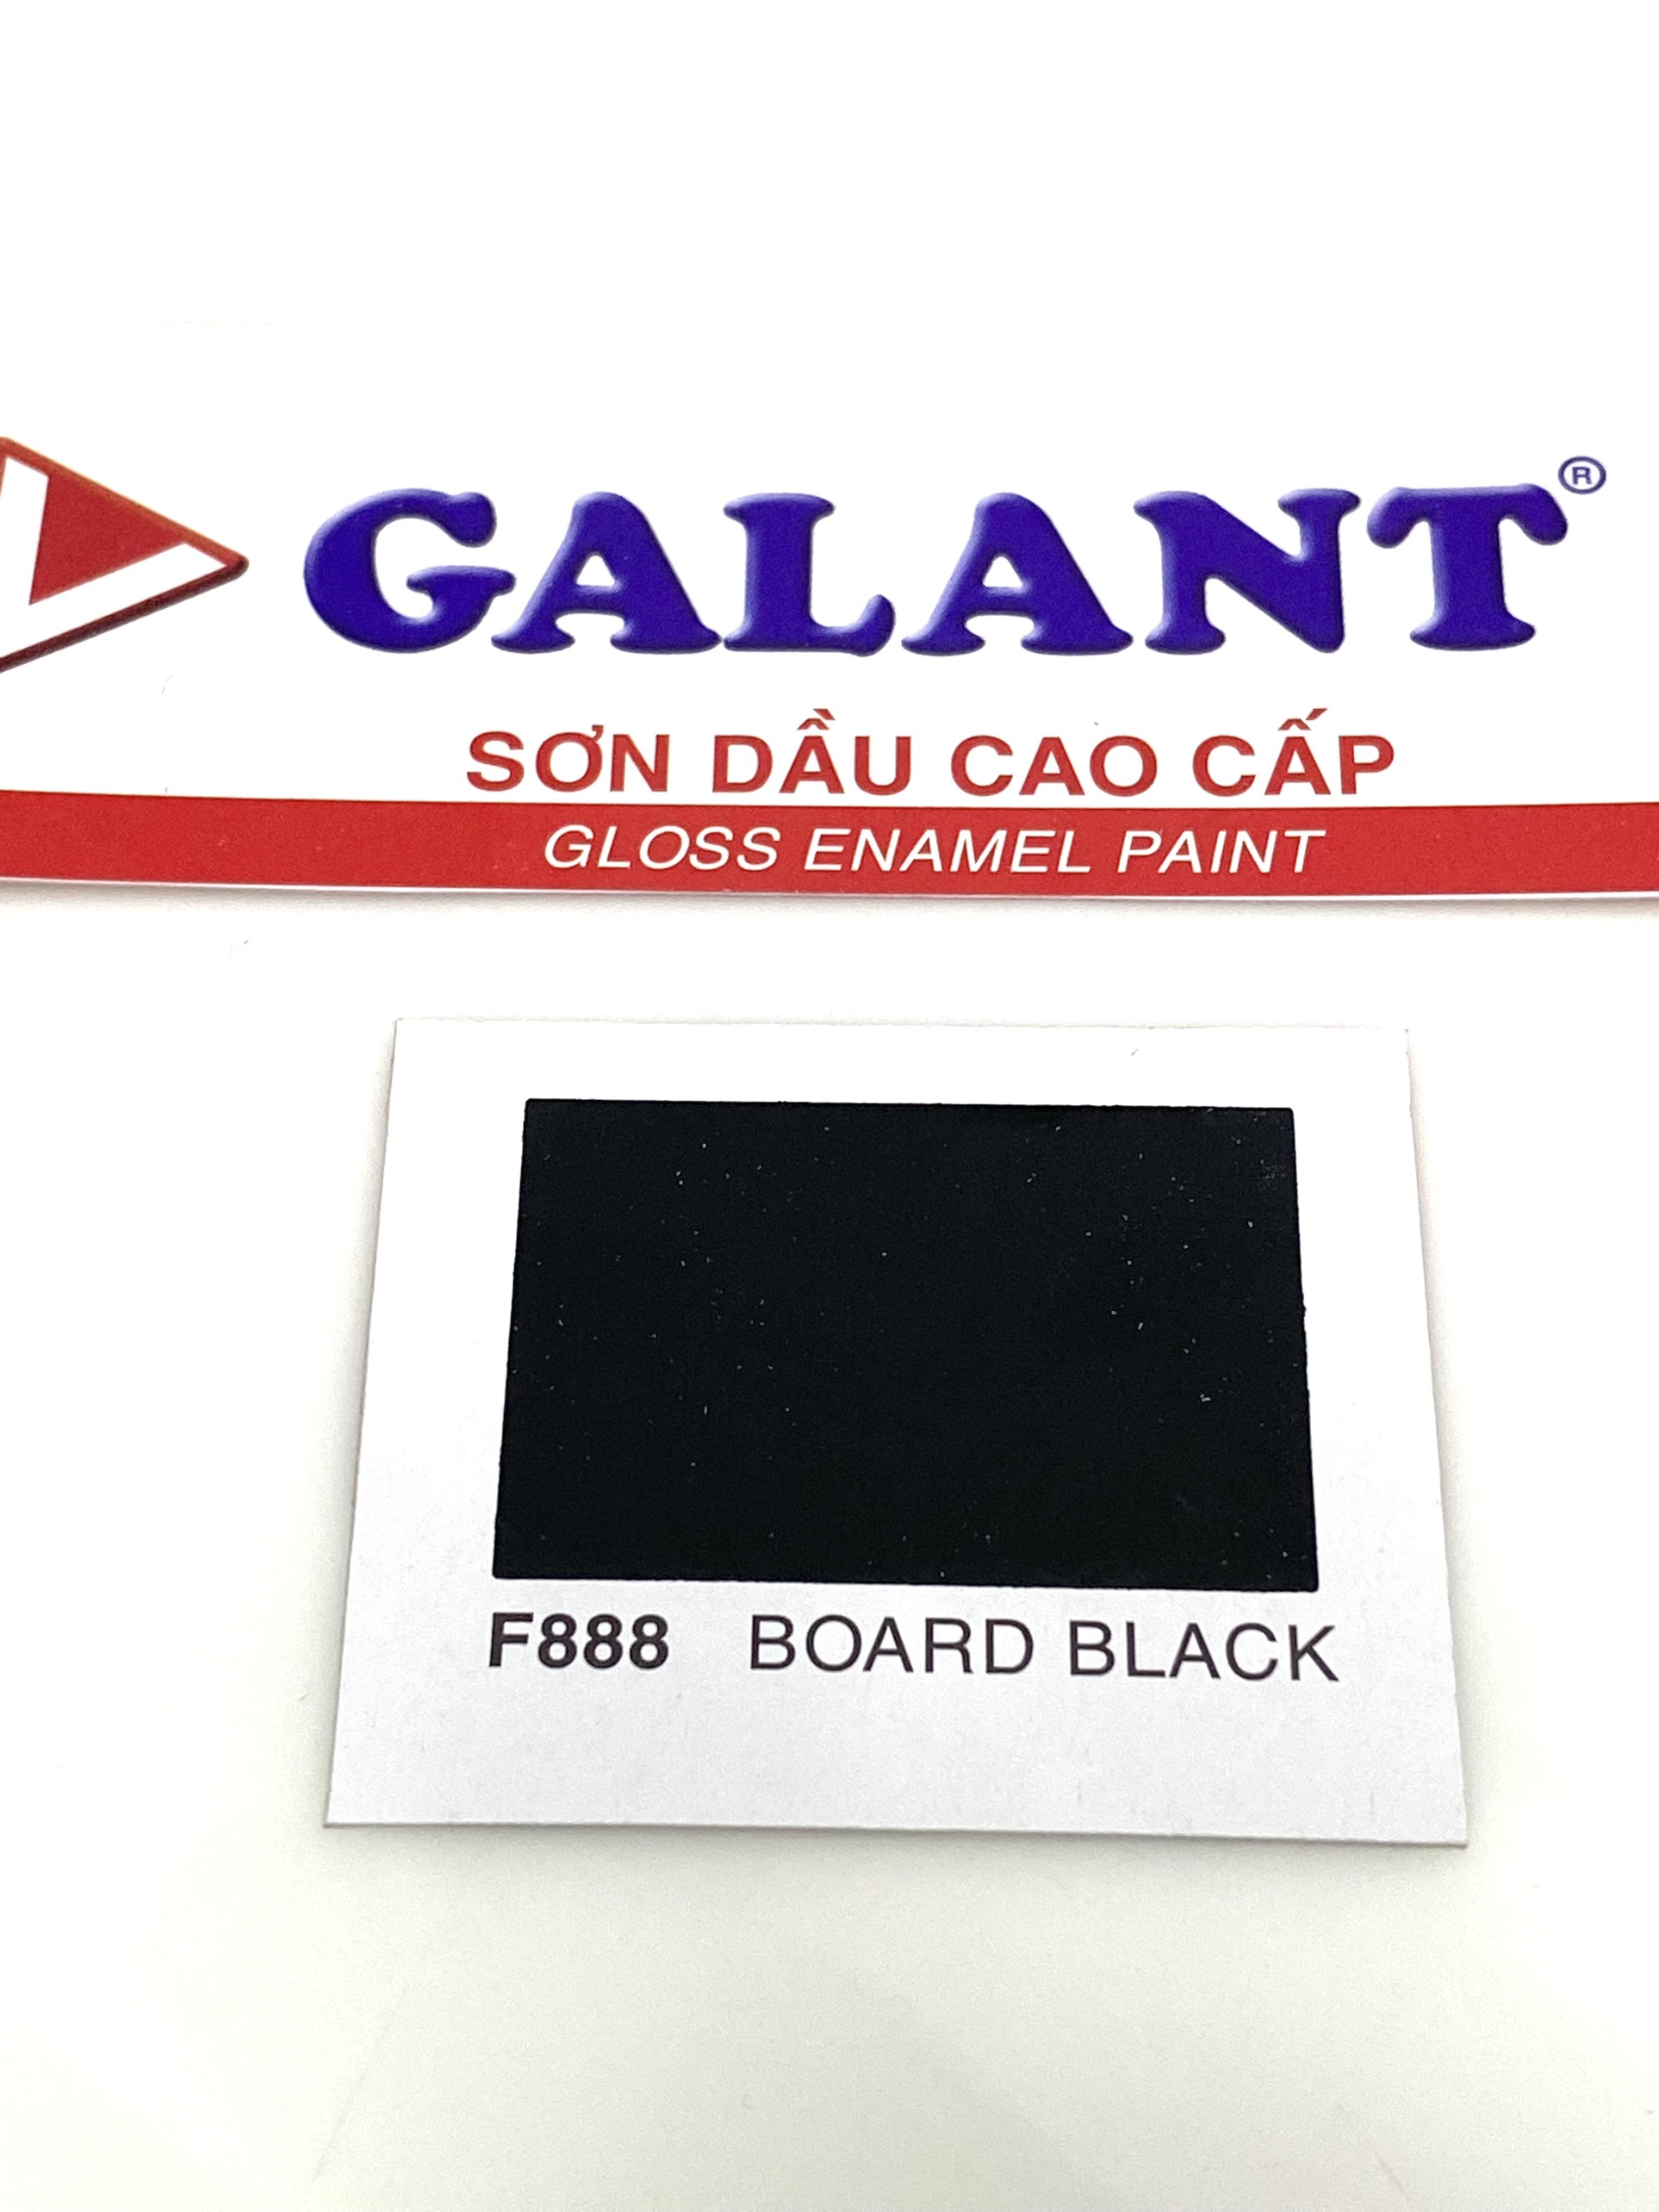 Sơn dầu Galant màu Board Black F888 _ 0.8L